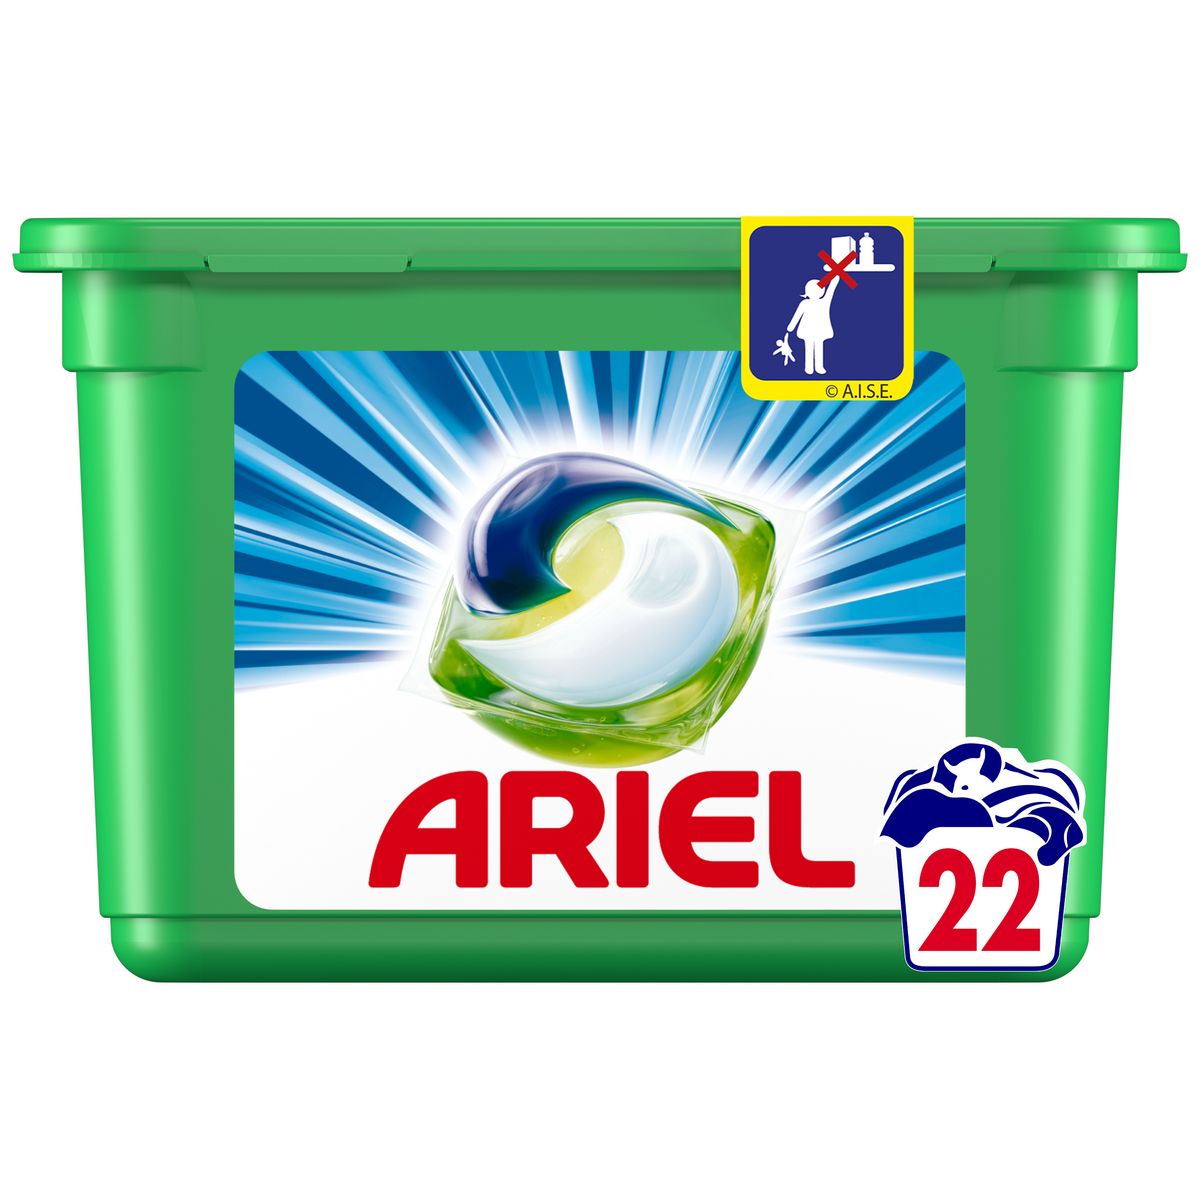 ARIEL Pods capsules de lessive tout en 1 alpine 22 lavages 22 capsules